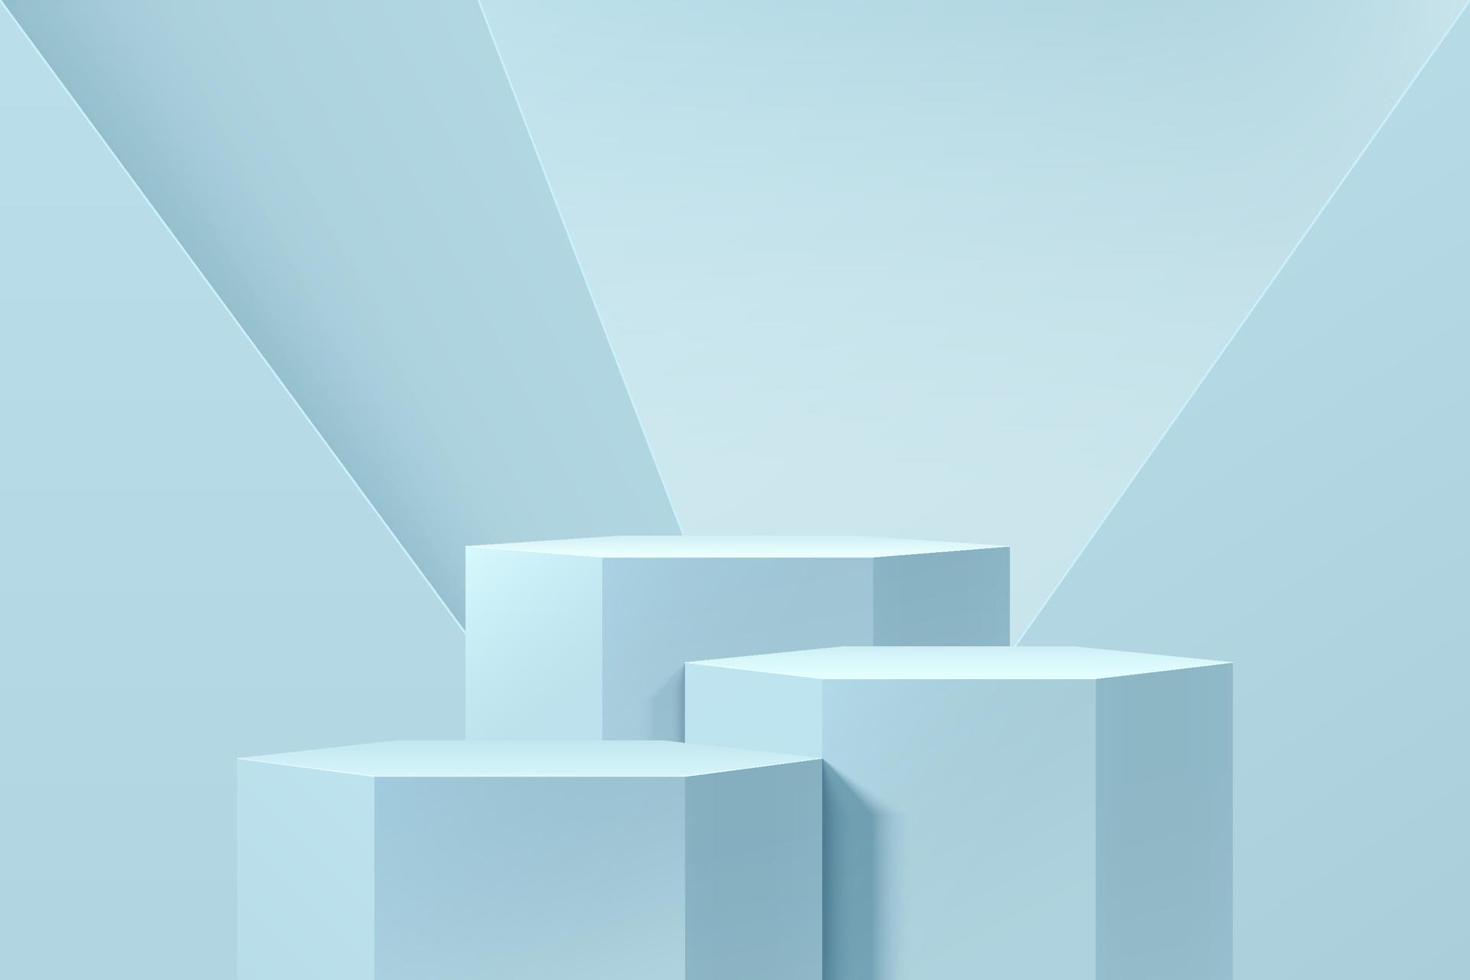 soporte hexagonal 3d azul claro realista o conjunto de podio con fondo de forma geométrica. escena de pared mínima pastel para exhibición de productos, exhibición de promoción. diseño de plataforma de sala de estudio abstracto vectorial. vector